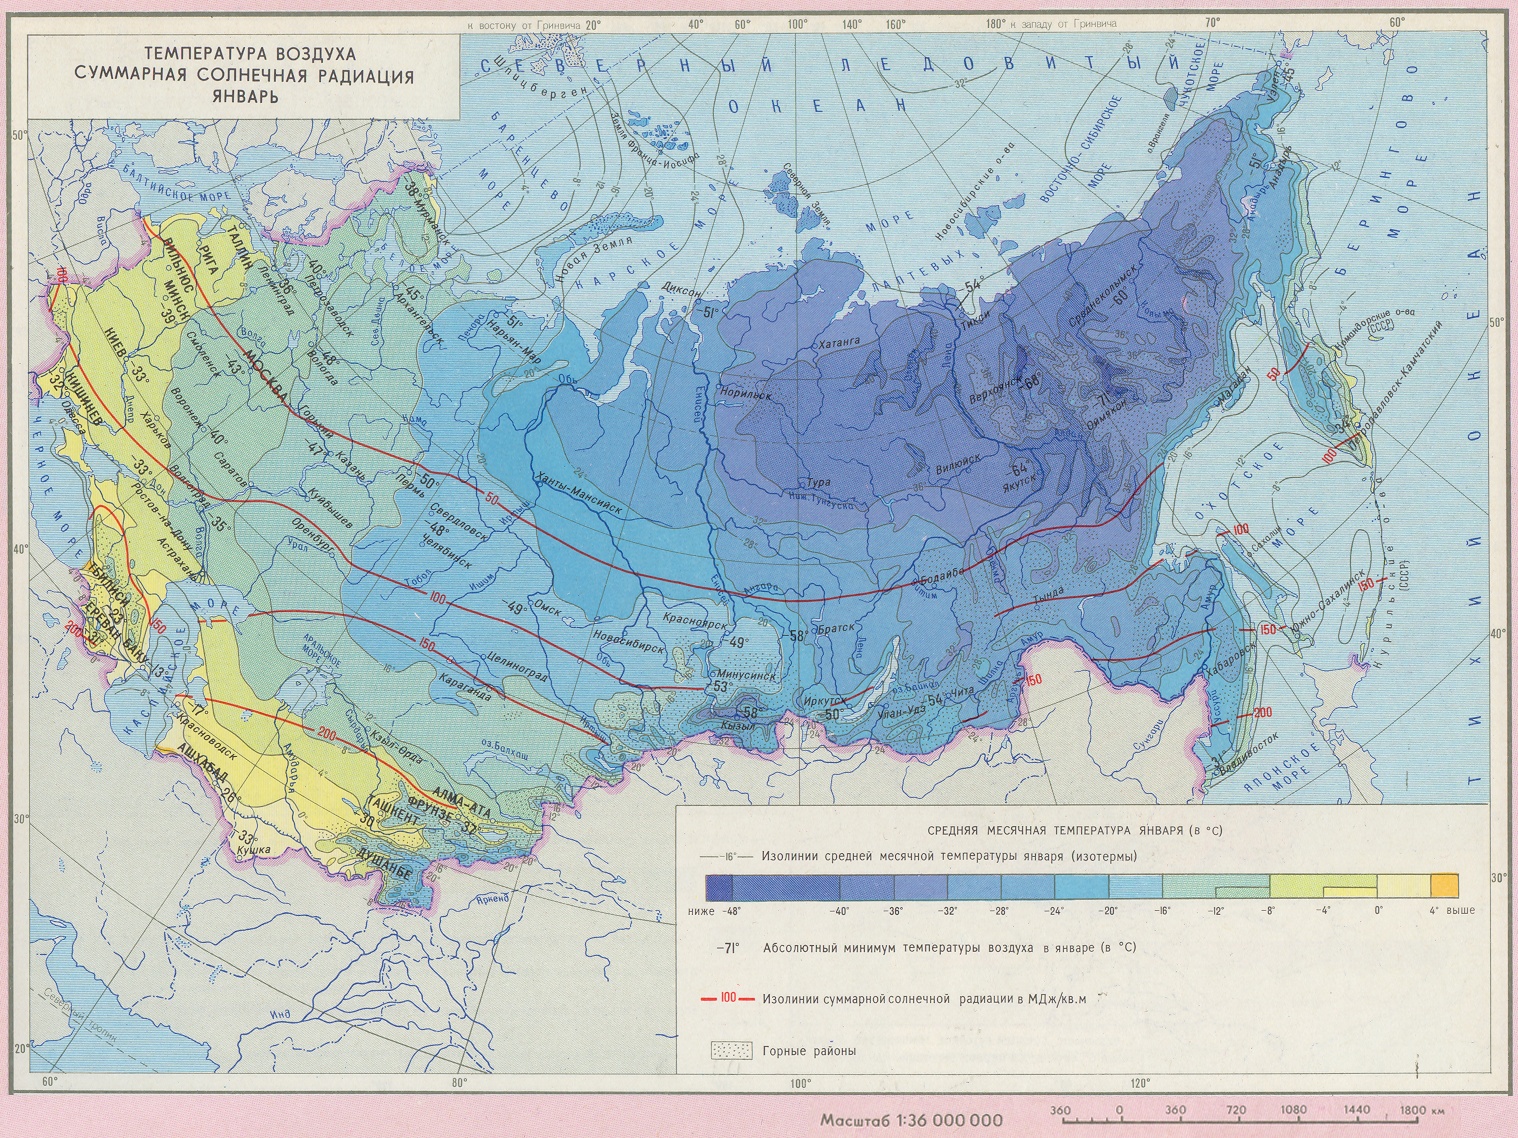 Средние температуры июля и января в россии